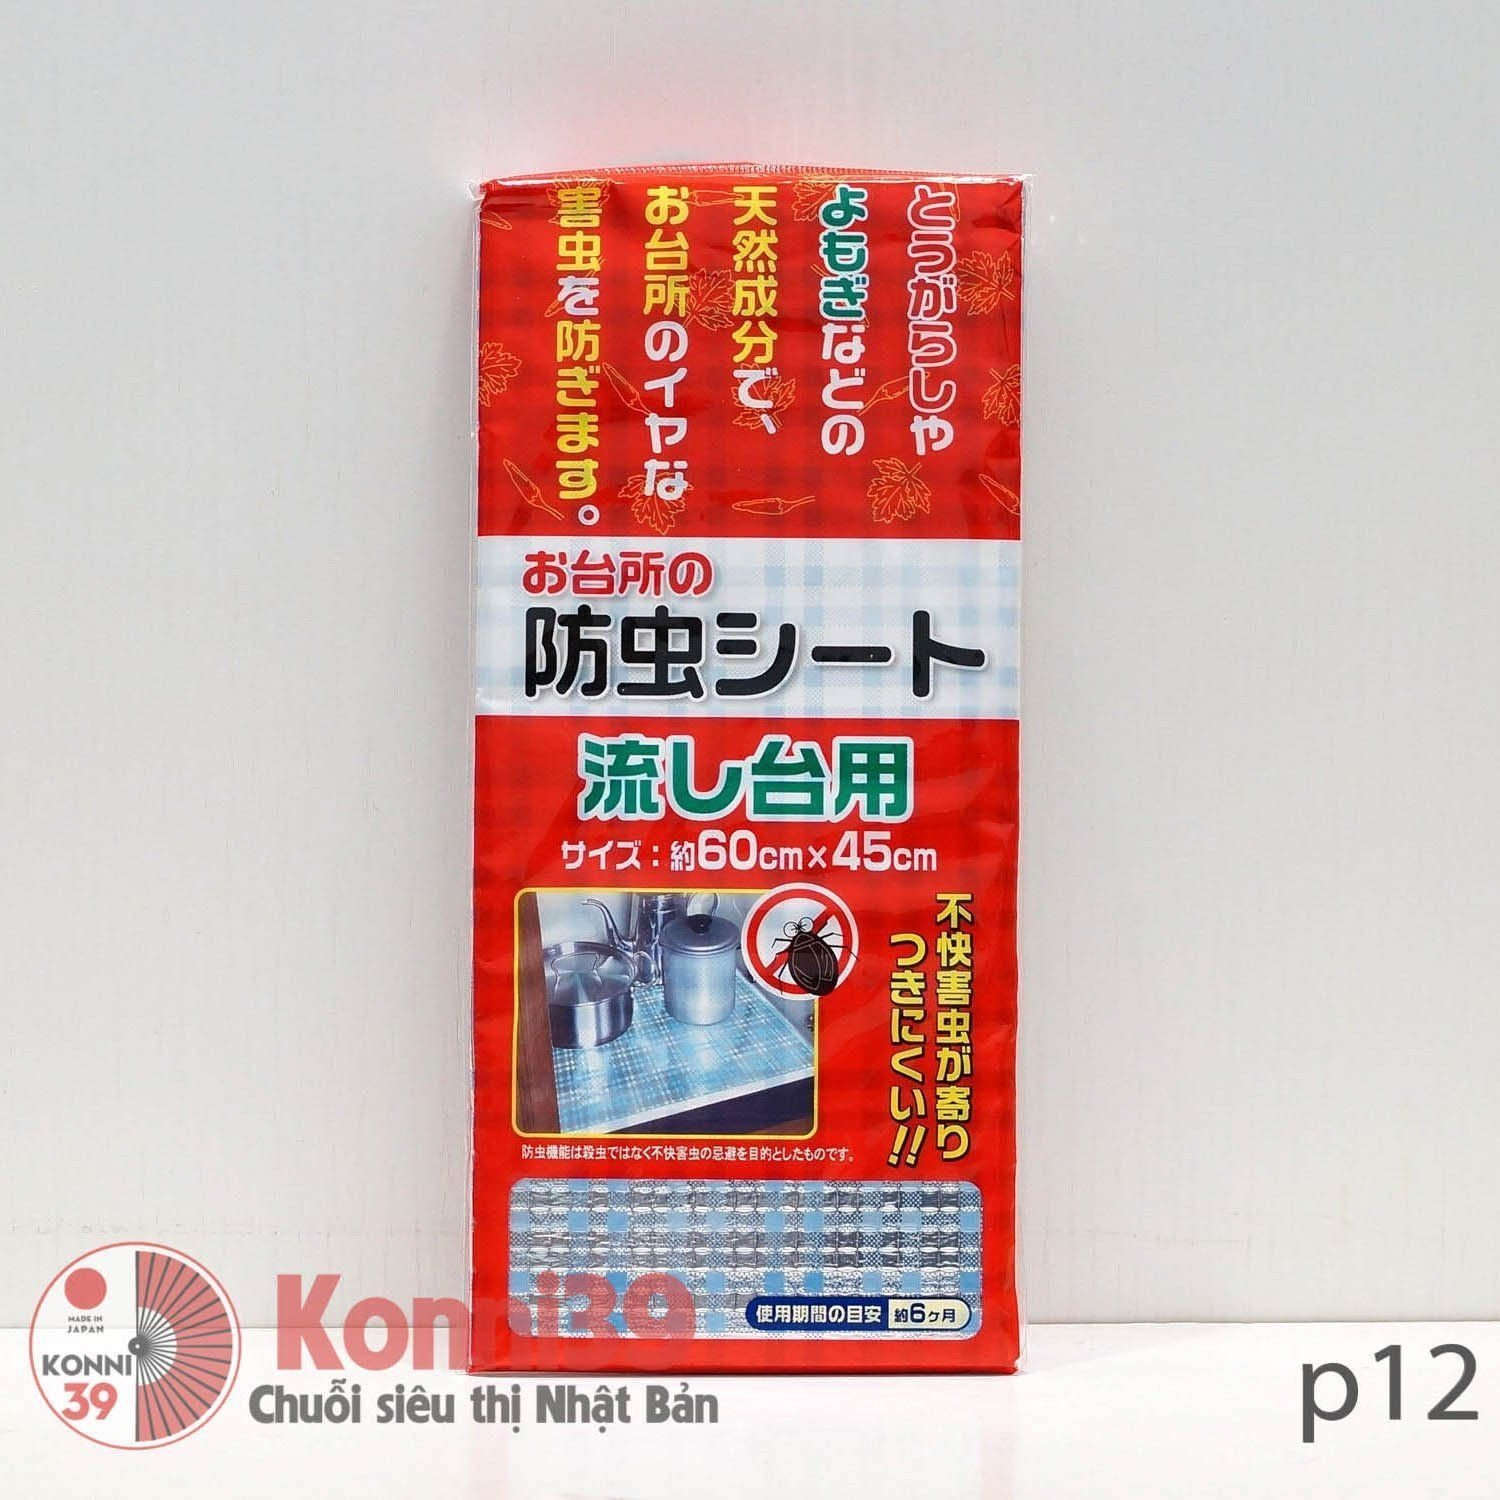 Miếng lót tủ bếp ngăn côn trùng 60cm x 45cm-Chuỗi siêu thị Nhật Bản - MADE IN JAPAN Konni39 tại Việt Nam